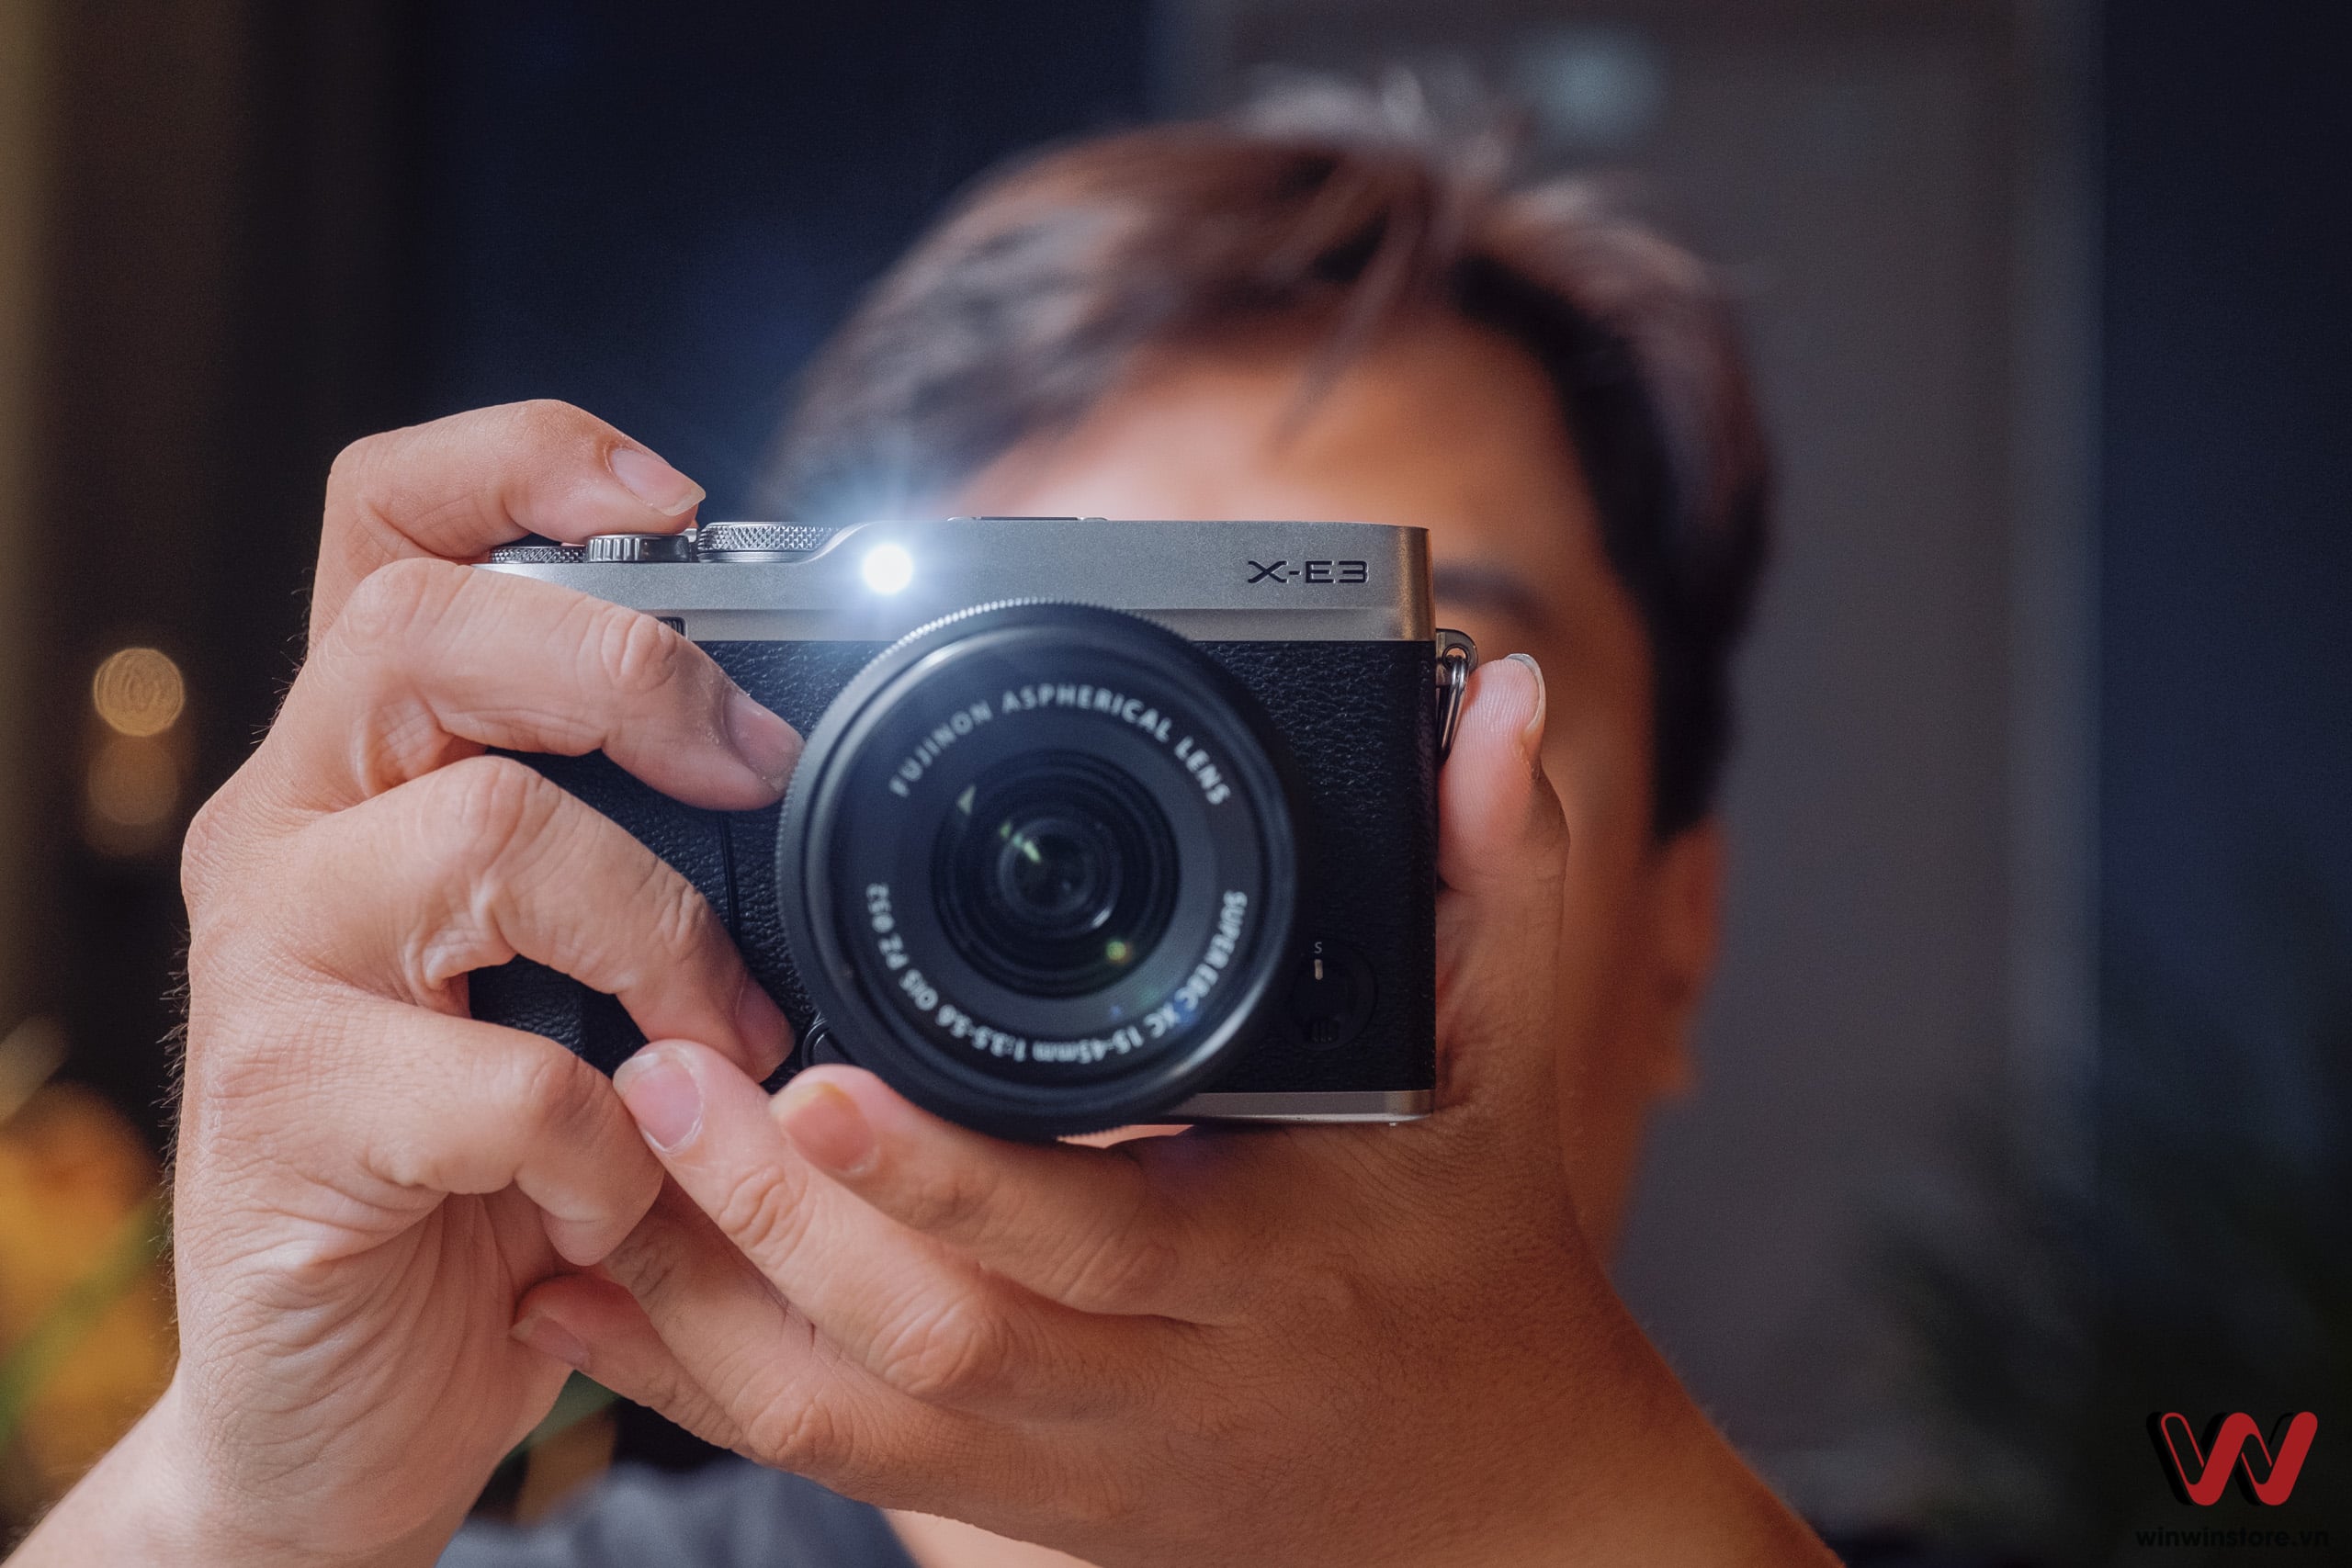 Cần biết những gì trước khi chọn mua chiếc máy ảnh kĩ thuật số đầu tiên cho bạn?